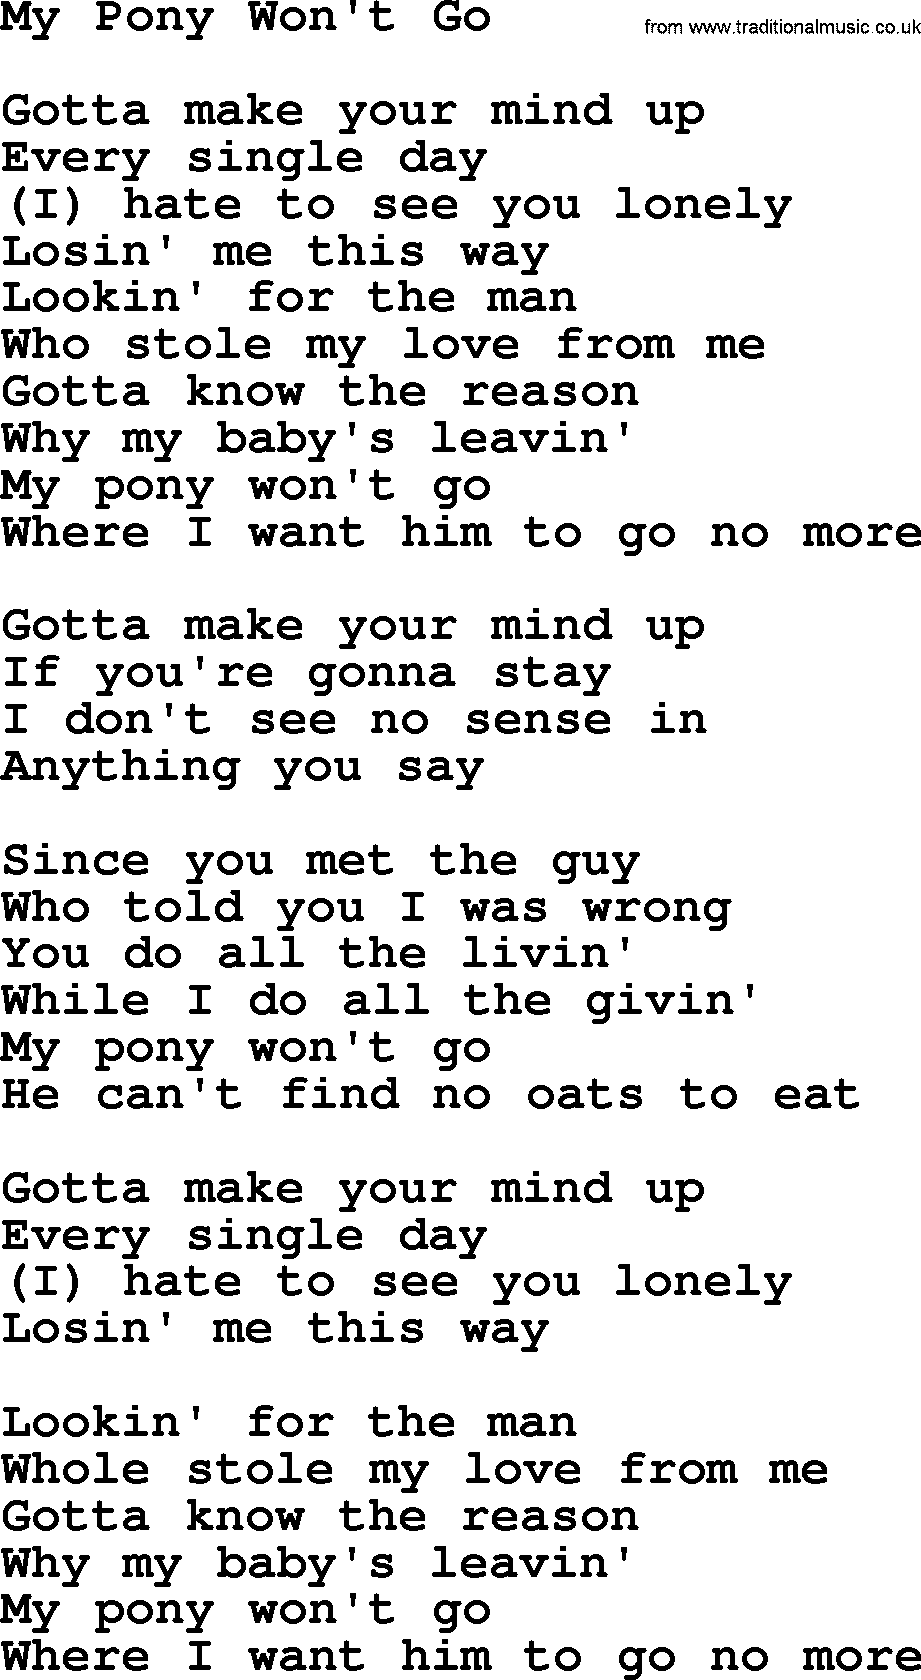 Gordon Lightfoot song My Pony Won't Go, lyrics